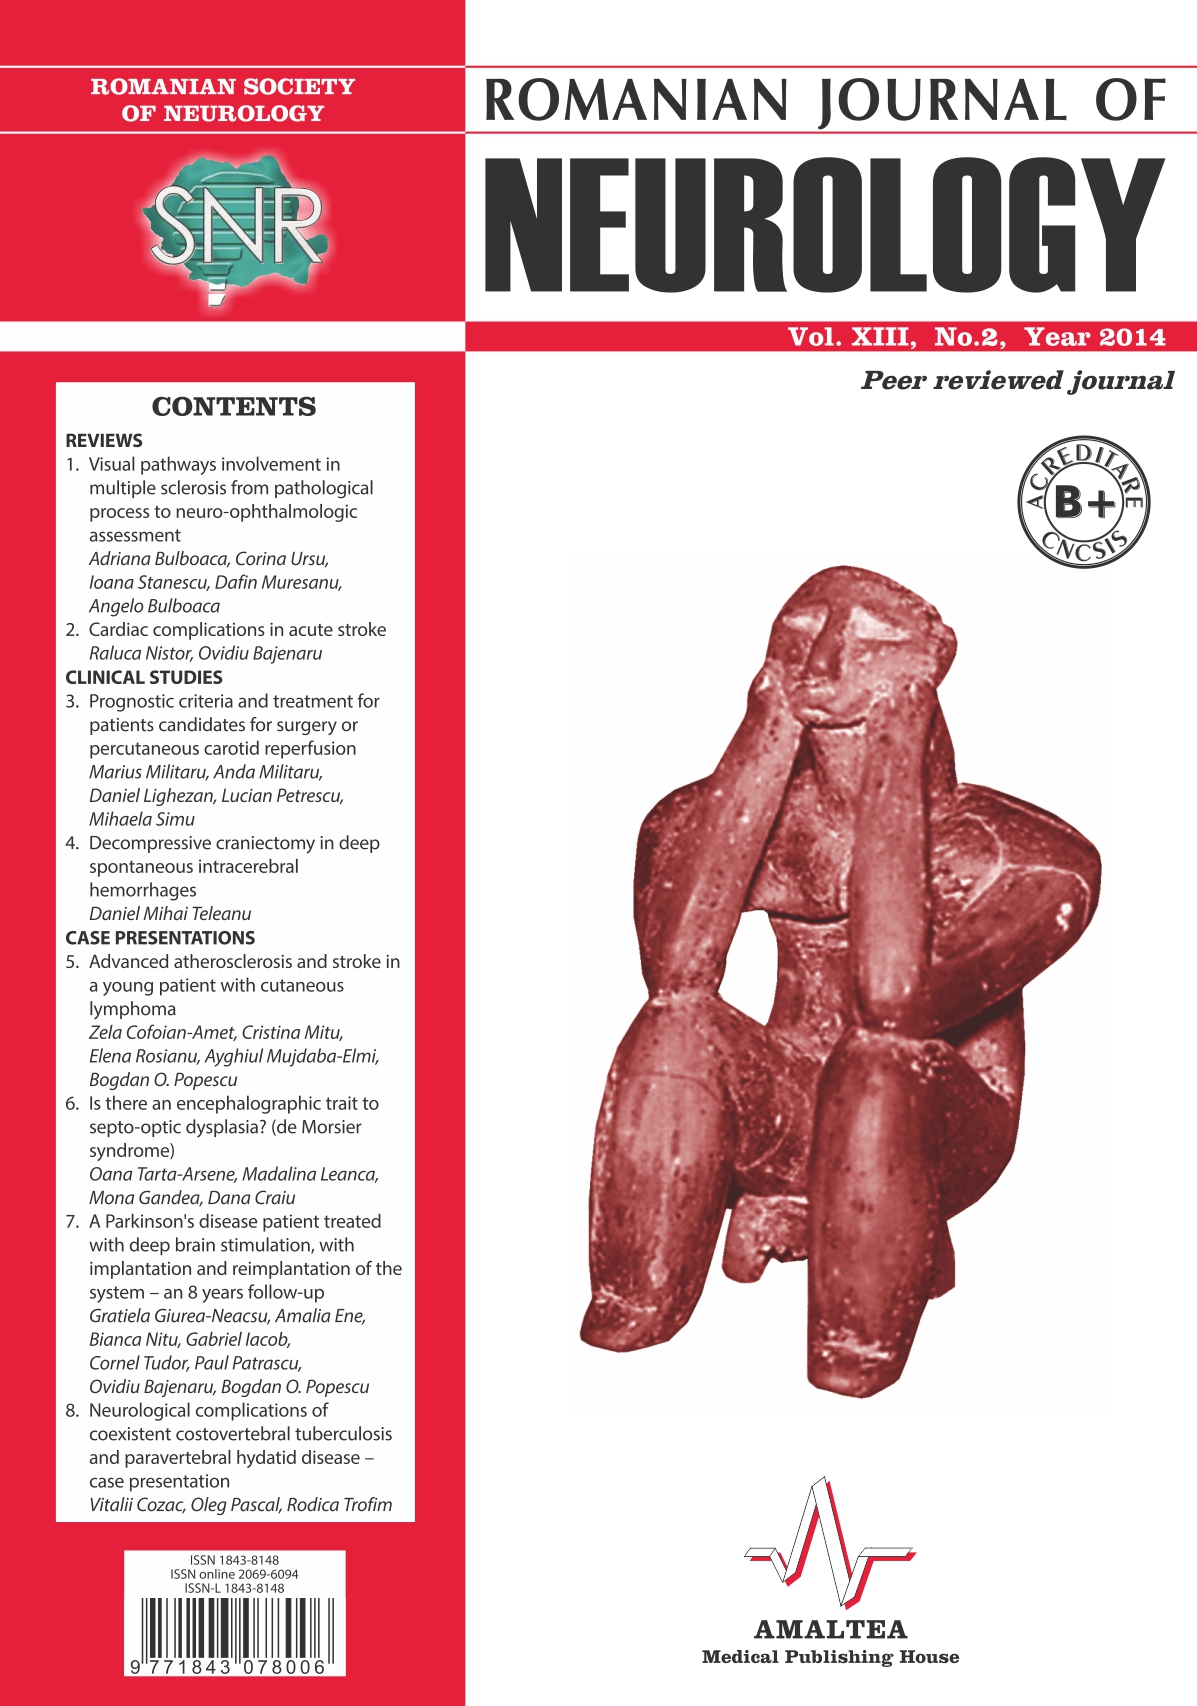 Romanian Journal of Neurology, Volume XIII, No. 2, 2014